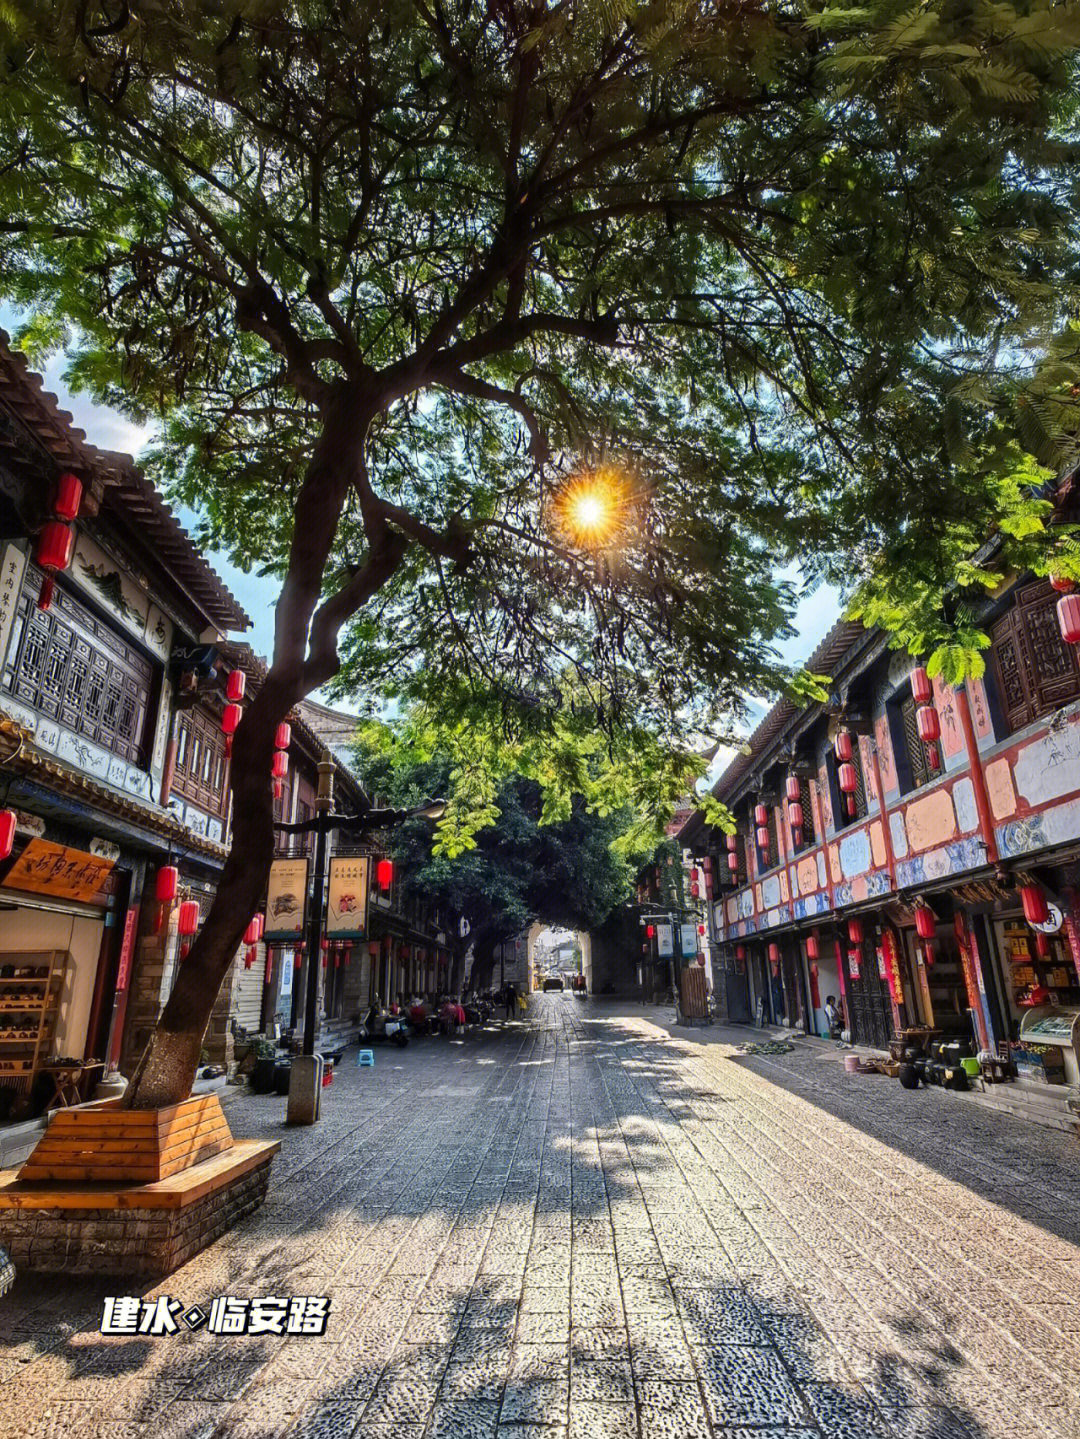 云南建水古城有条美丽的大街,其名叫临安路,东起东门朝阳楼,西至西门